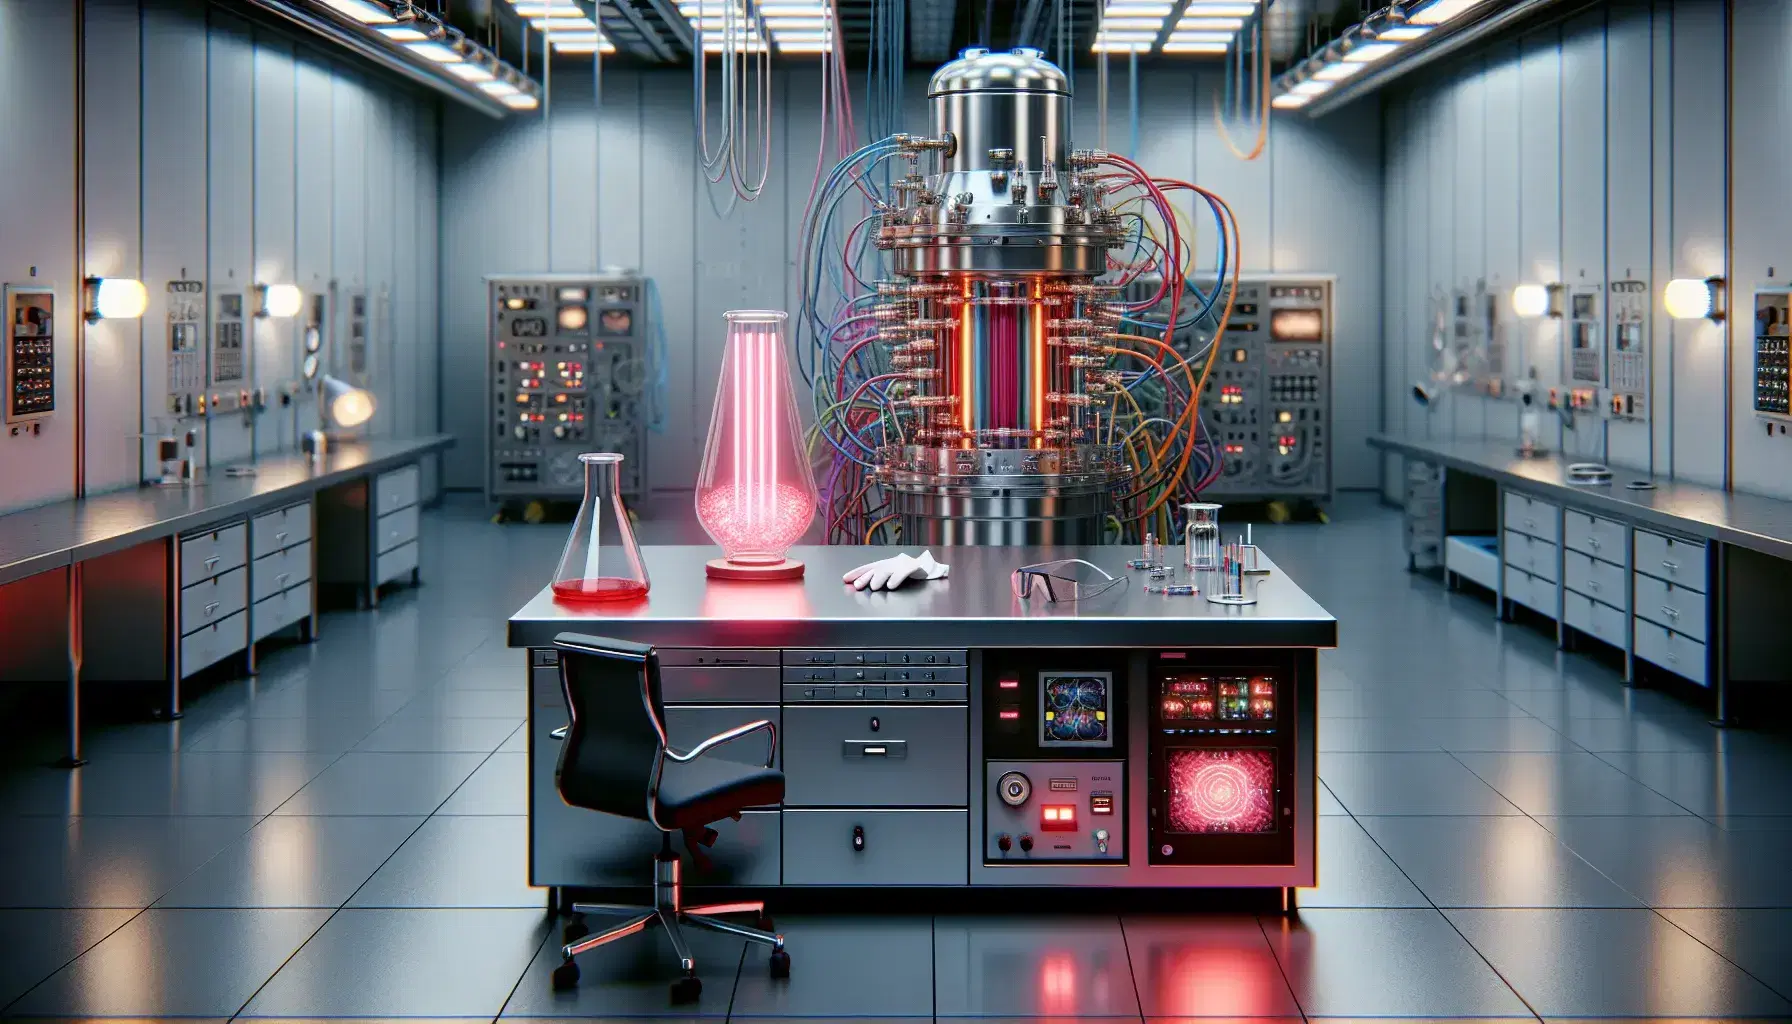 Laboratorio de física de partículas con mesa metálica, tubo de neón rojo, guantes de seguridad y gafas, máquina cilíndrica con tubos y luces LED azules, sin personas.